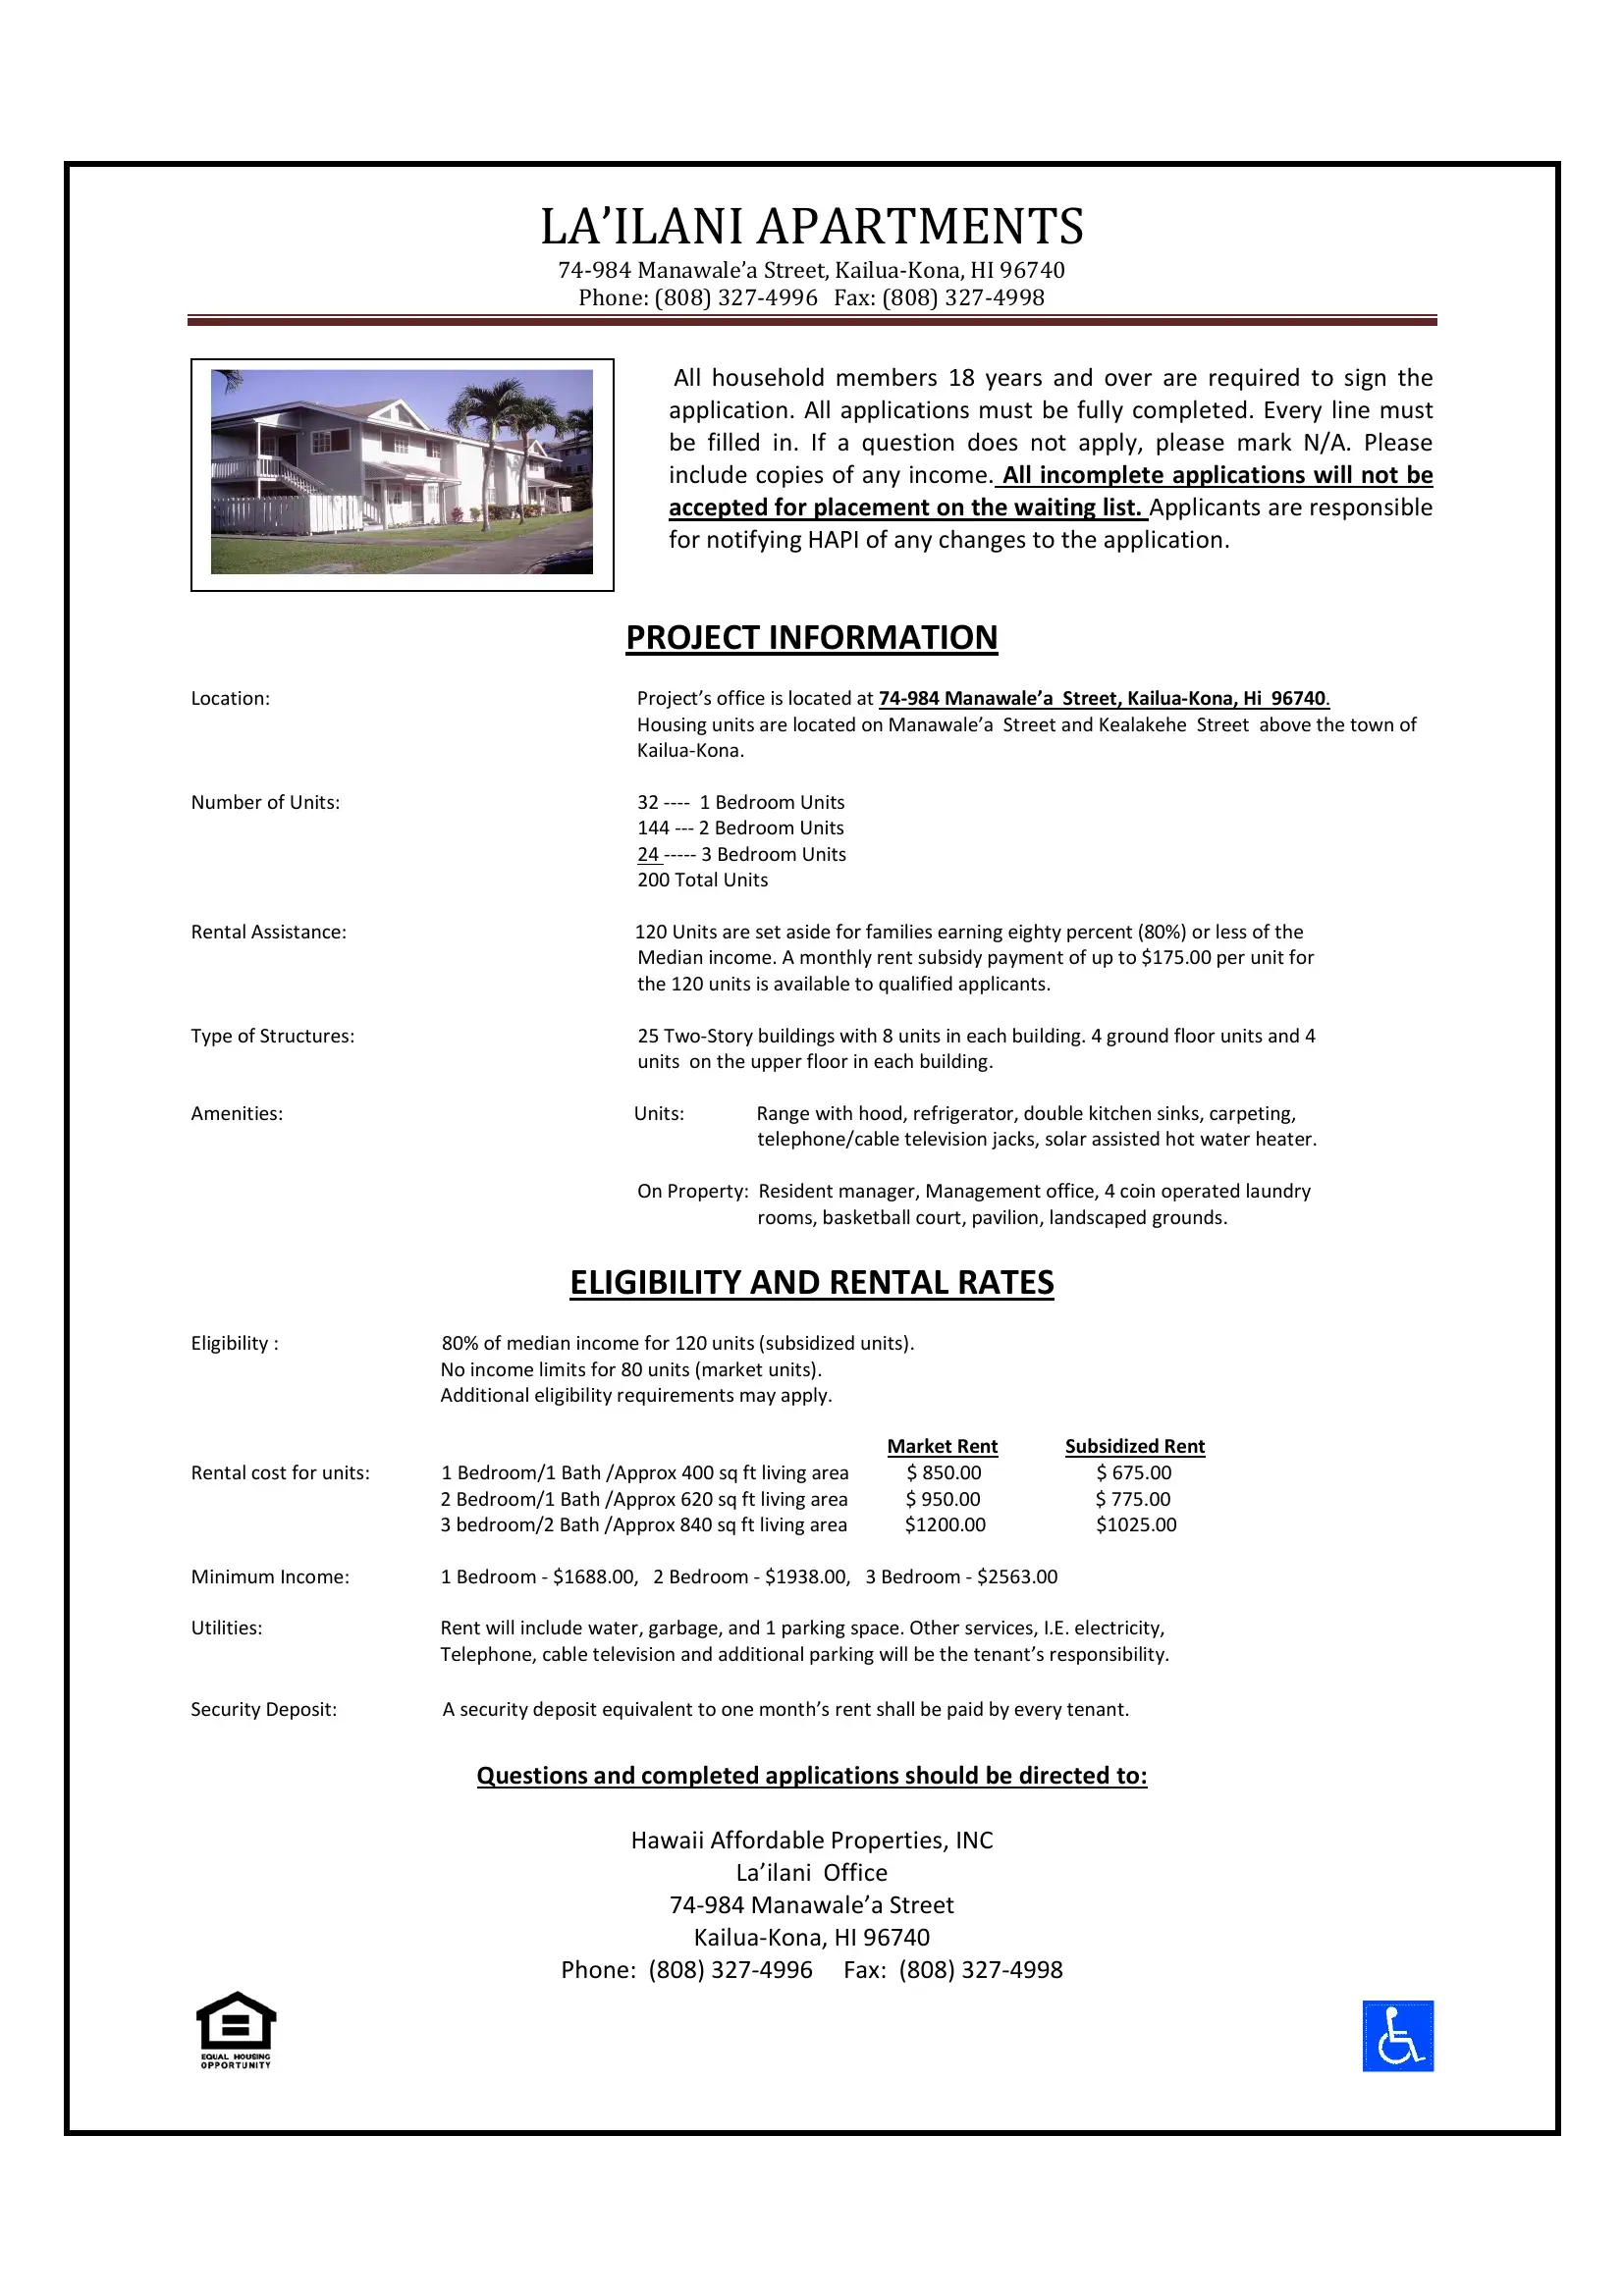 Lailani Apartments Form Preview